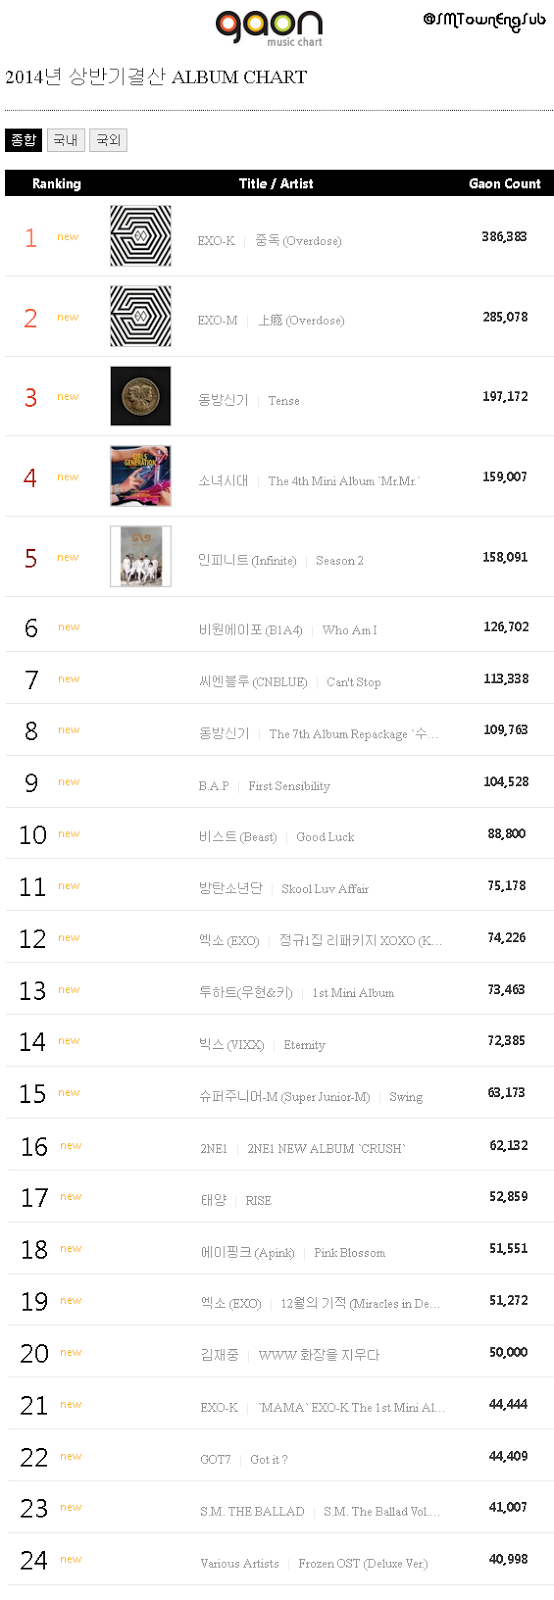 قائمة | مخطط Gaon يصدر قائمة اكثر 100 البوم مبيعا في النصف الاول من 2014  B32f8-0